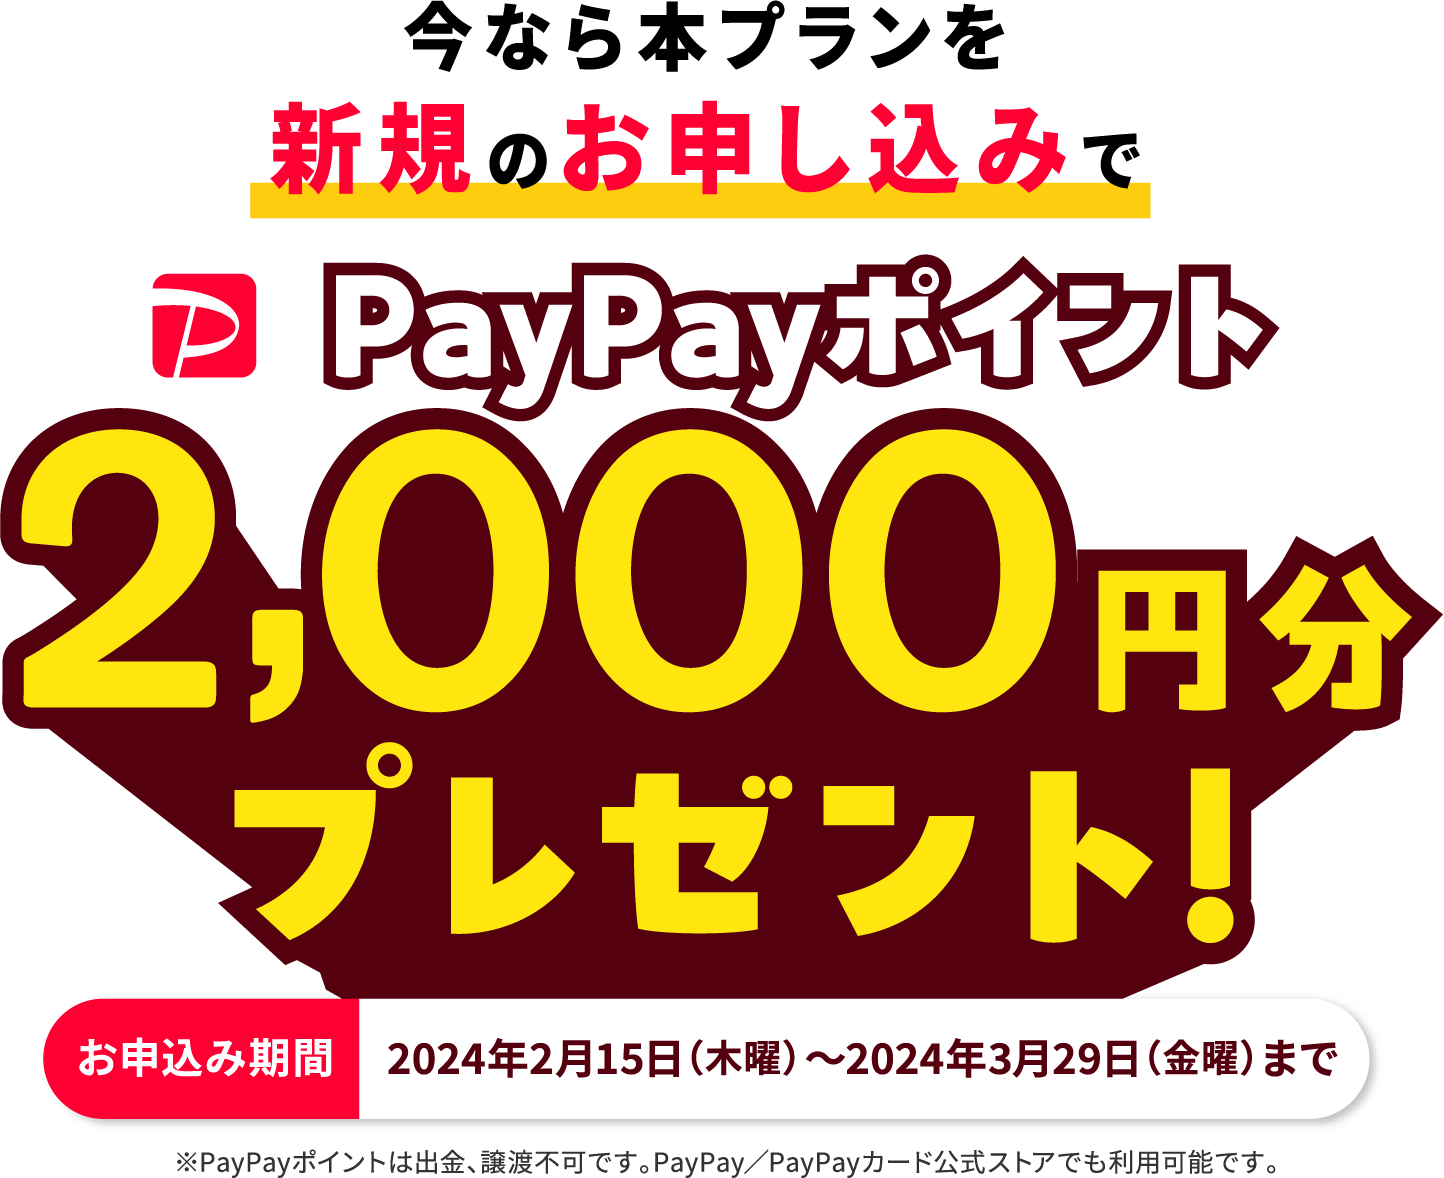 今なら本プランを新規のお申し込みでPayPayポイント5,000円分プレゼント! ※出金と譲渡はできません。PayPay公式ストアでも利用可能です。